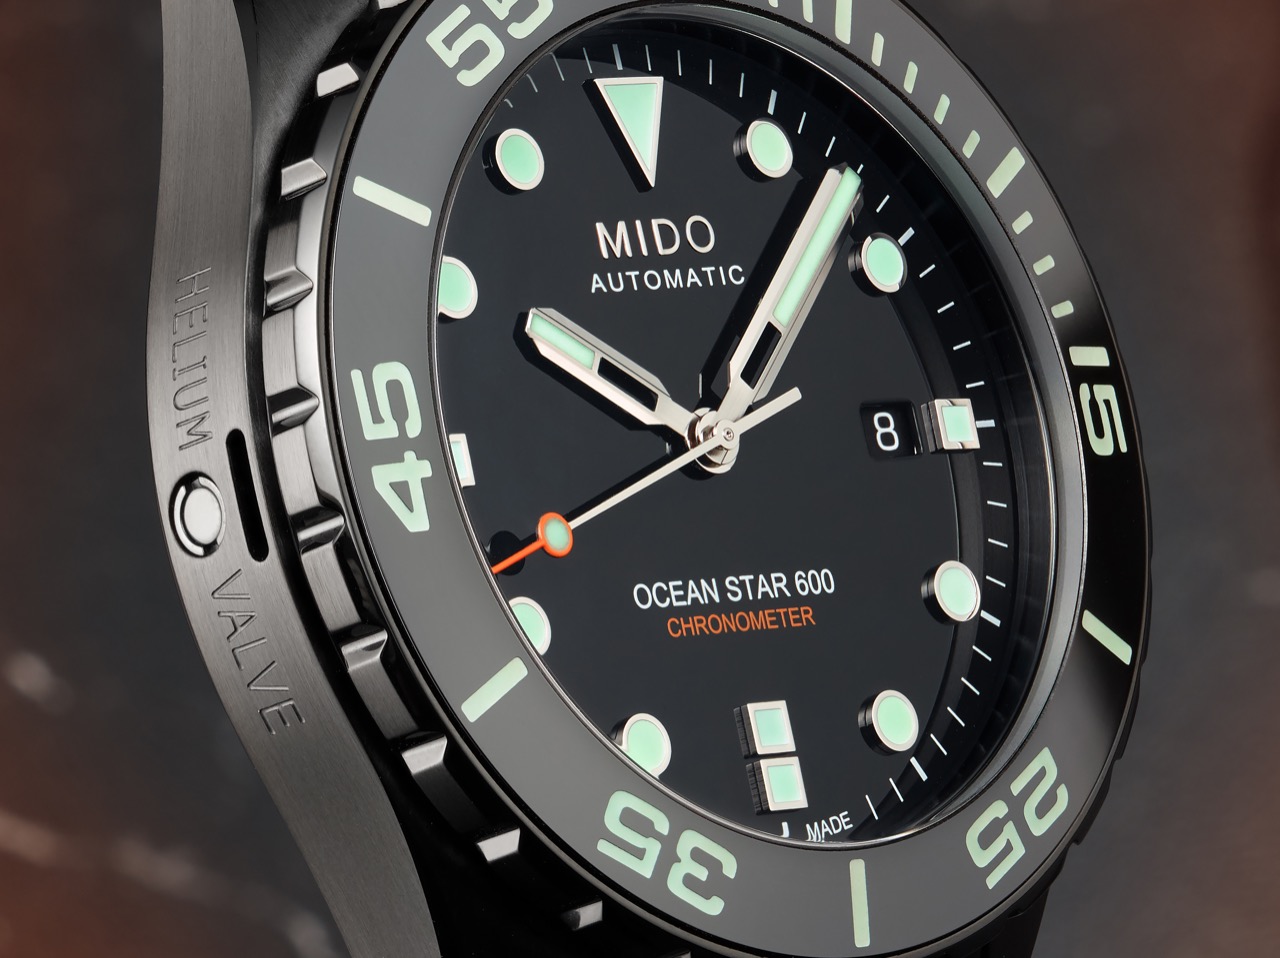 Mido Ocean Star 600 Chronometer Black DLC Special Edition dial